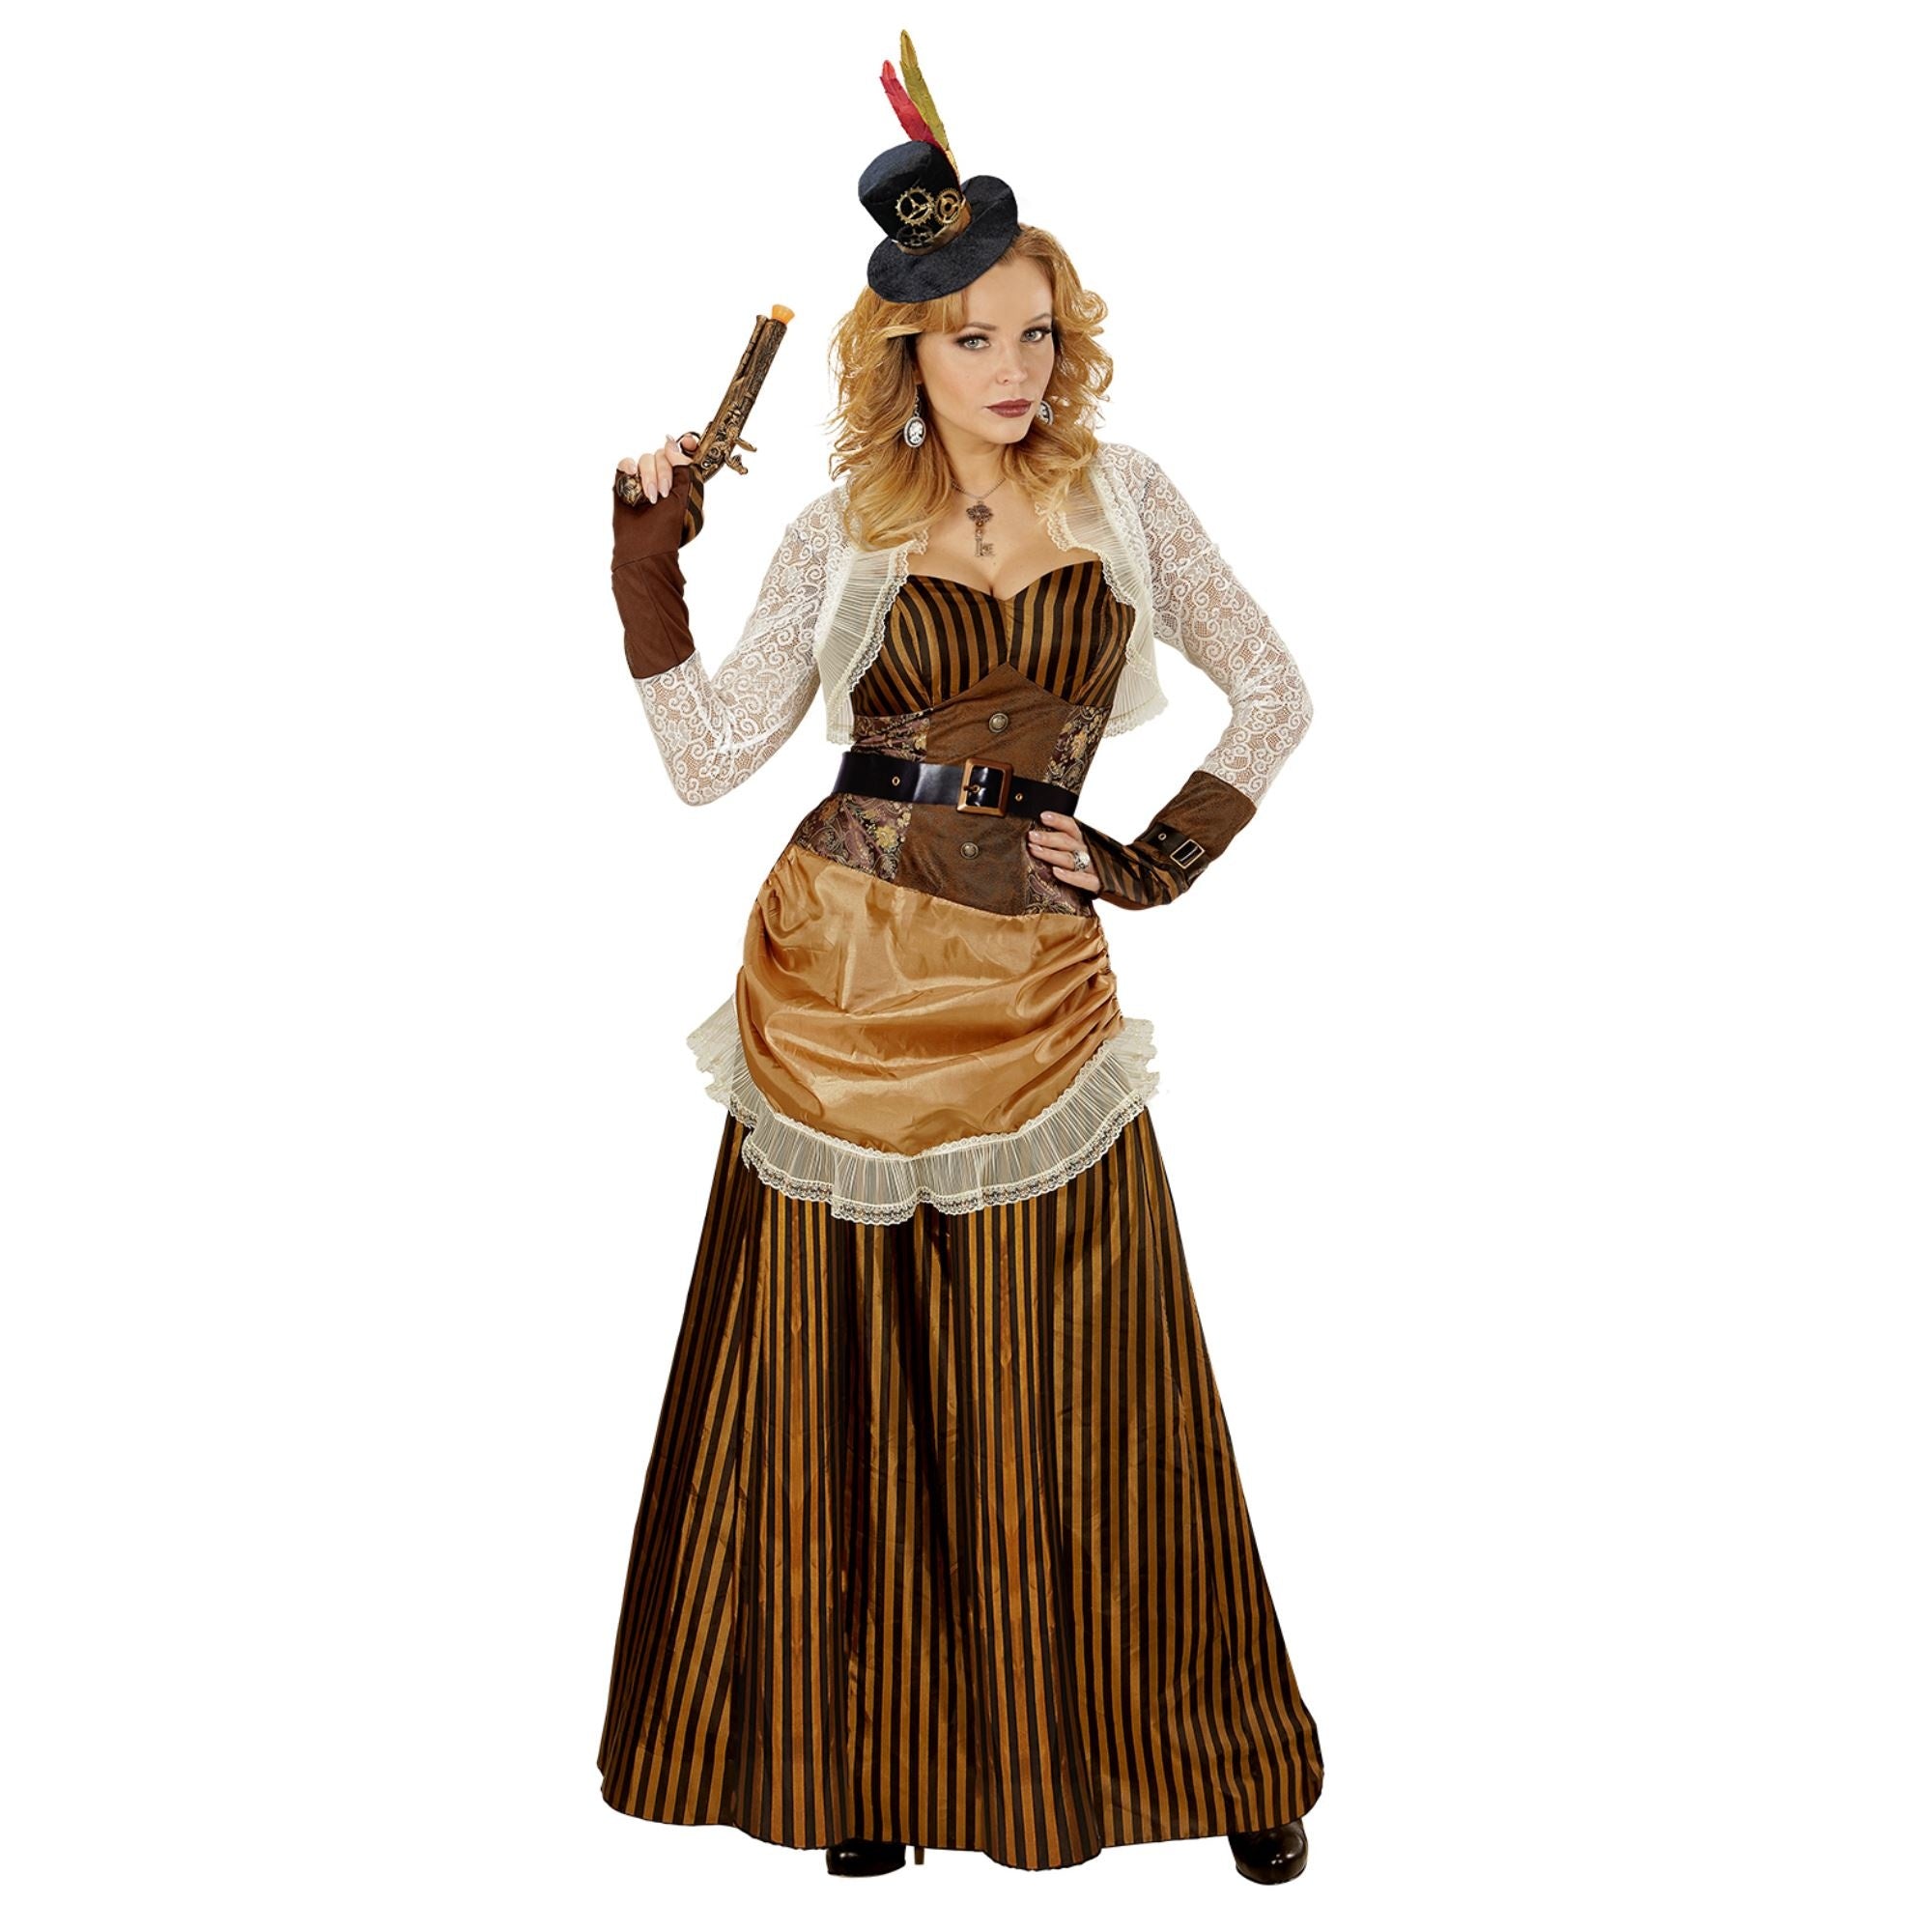 Steampunk barok kostuum voor vrouwen - Verkleedkleding